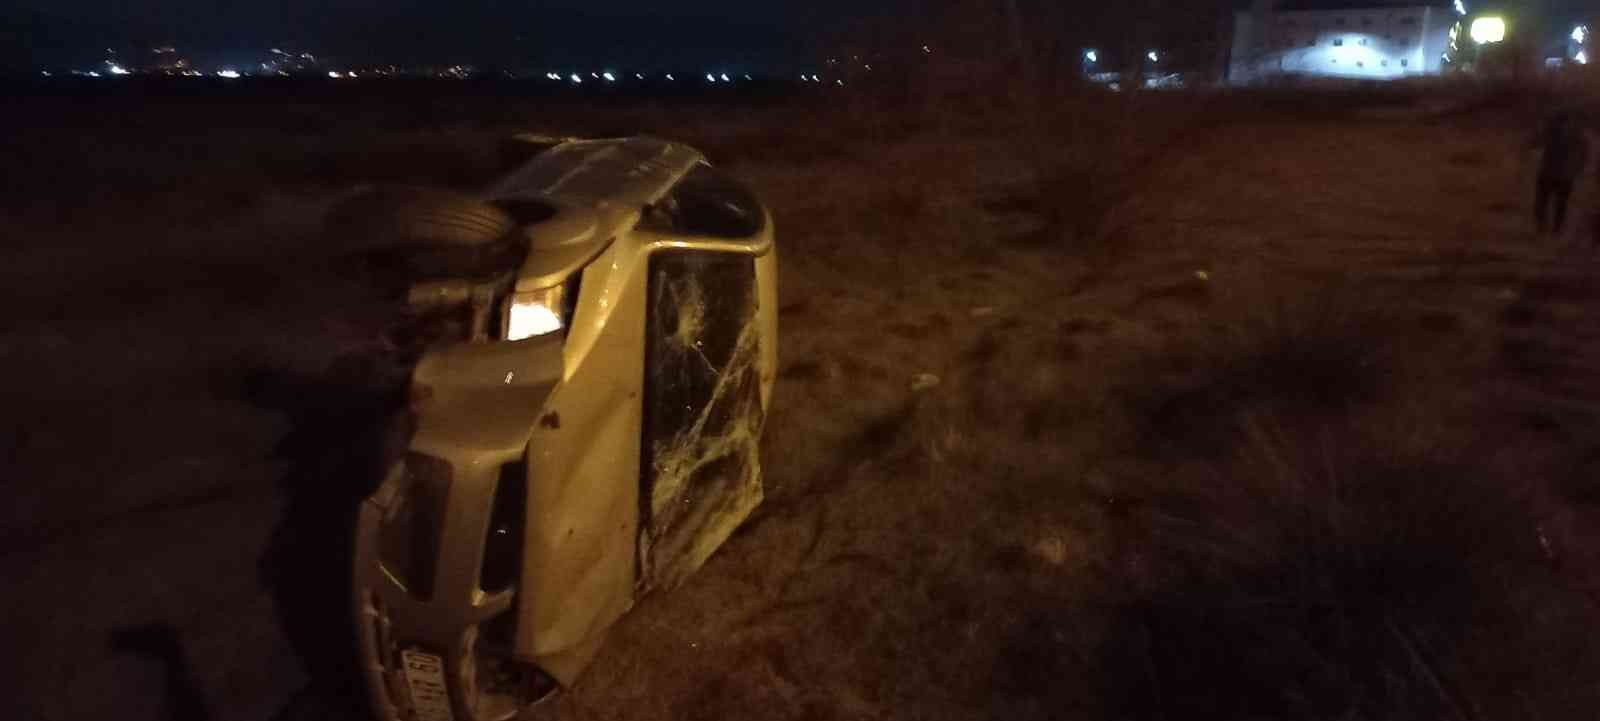 Aydın’da otomobil araziye uçtu: 1 yaralı #aydin